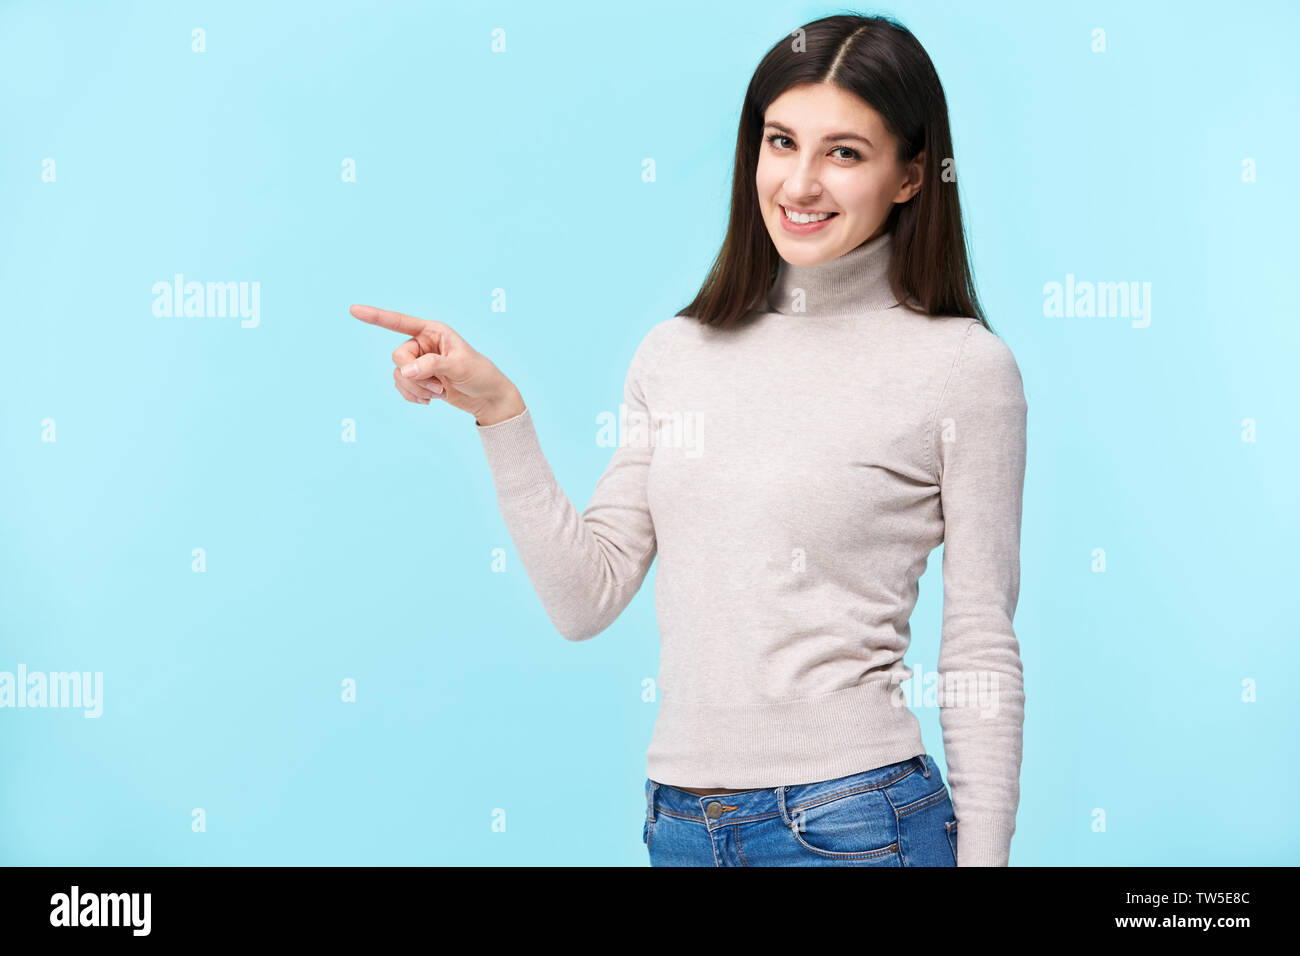 Portrait d'une belle jeune femme de race blanche, de pointer du doigt quelque chose, smiling, isolé sur fond bleu Banque D'Images